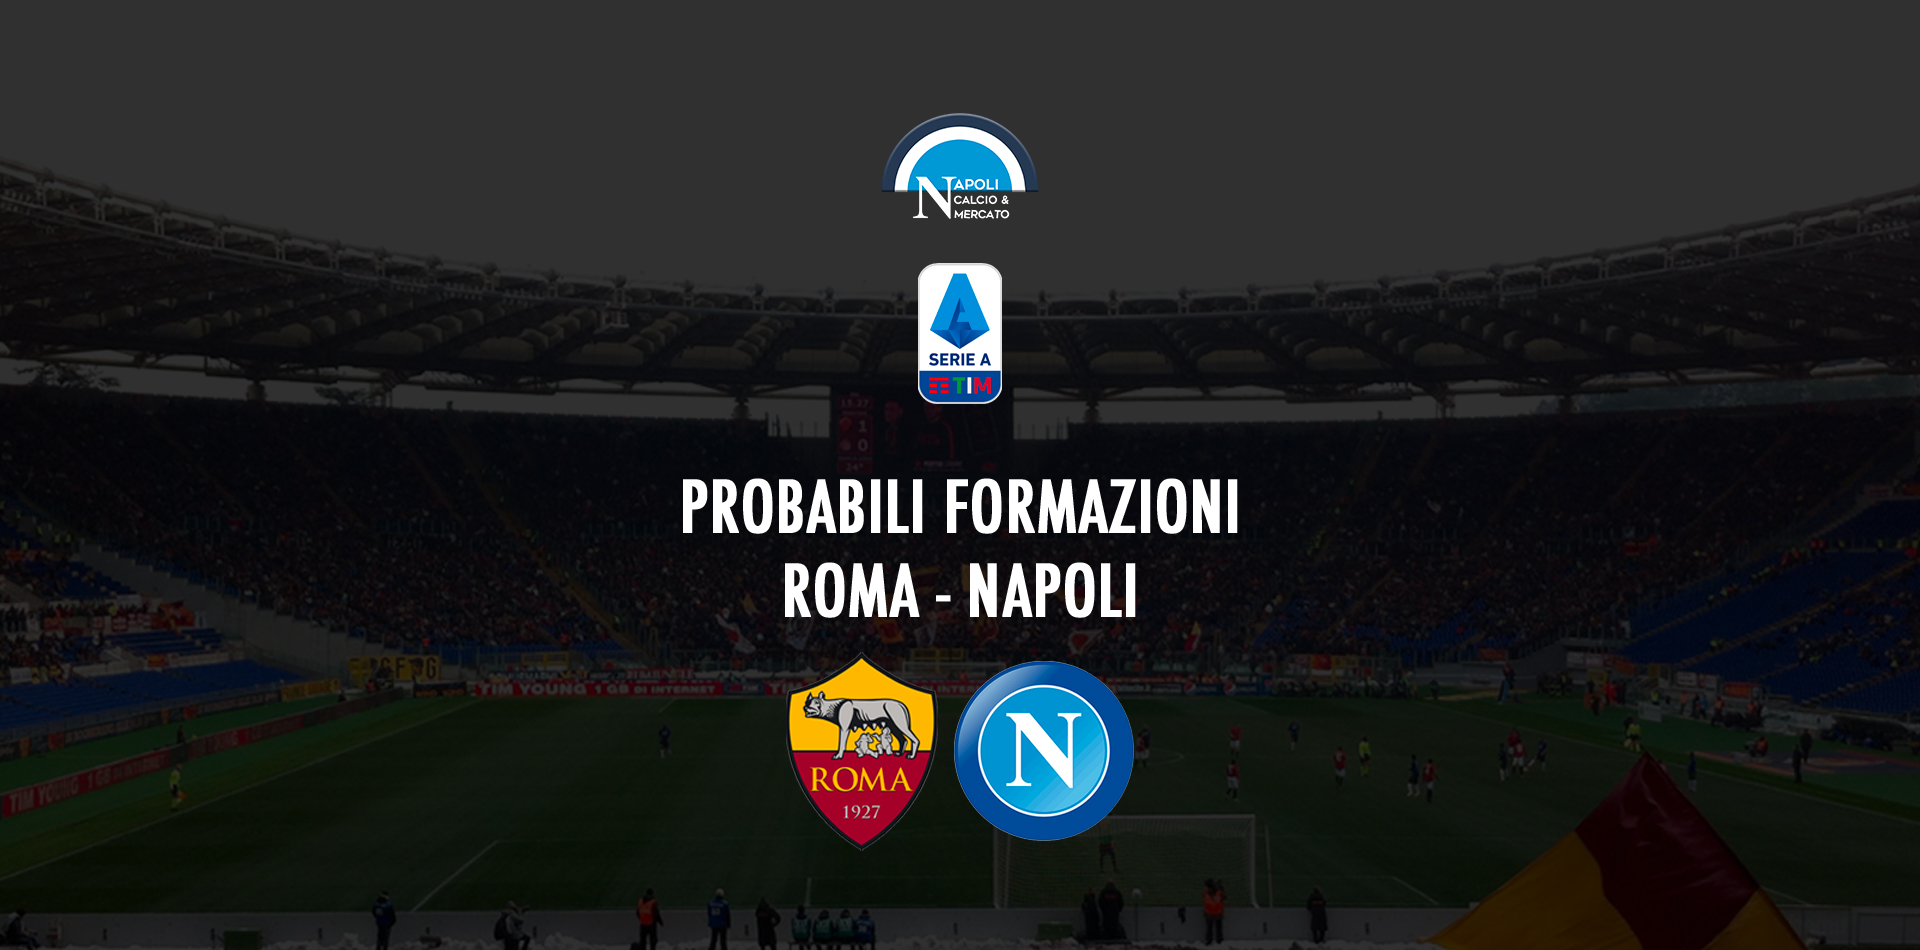 probabili formazioni roma napoli probabile formazione calcio napoli24 serie a stadio olimpico